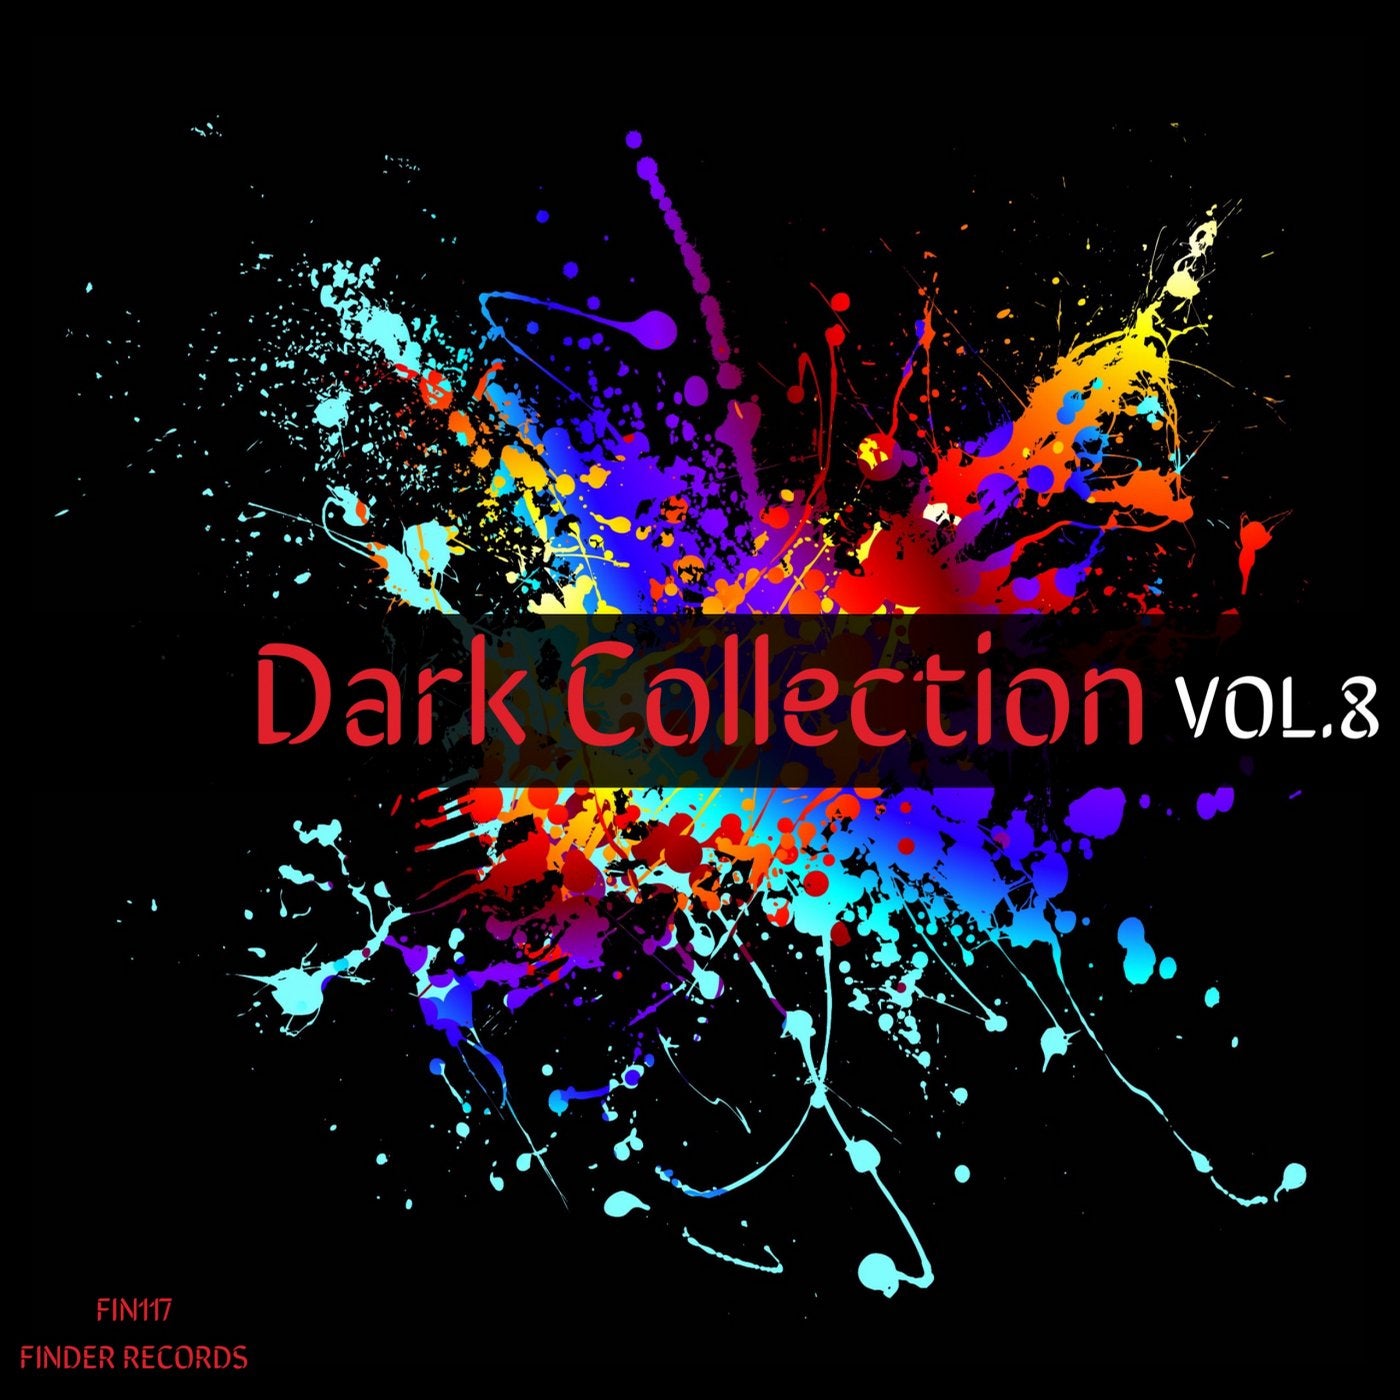 Dark Collection Vol.8